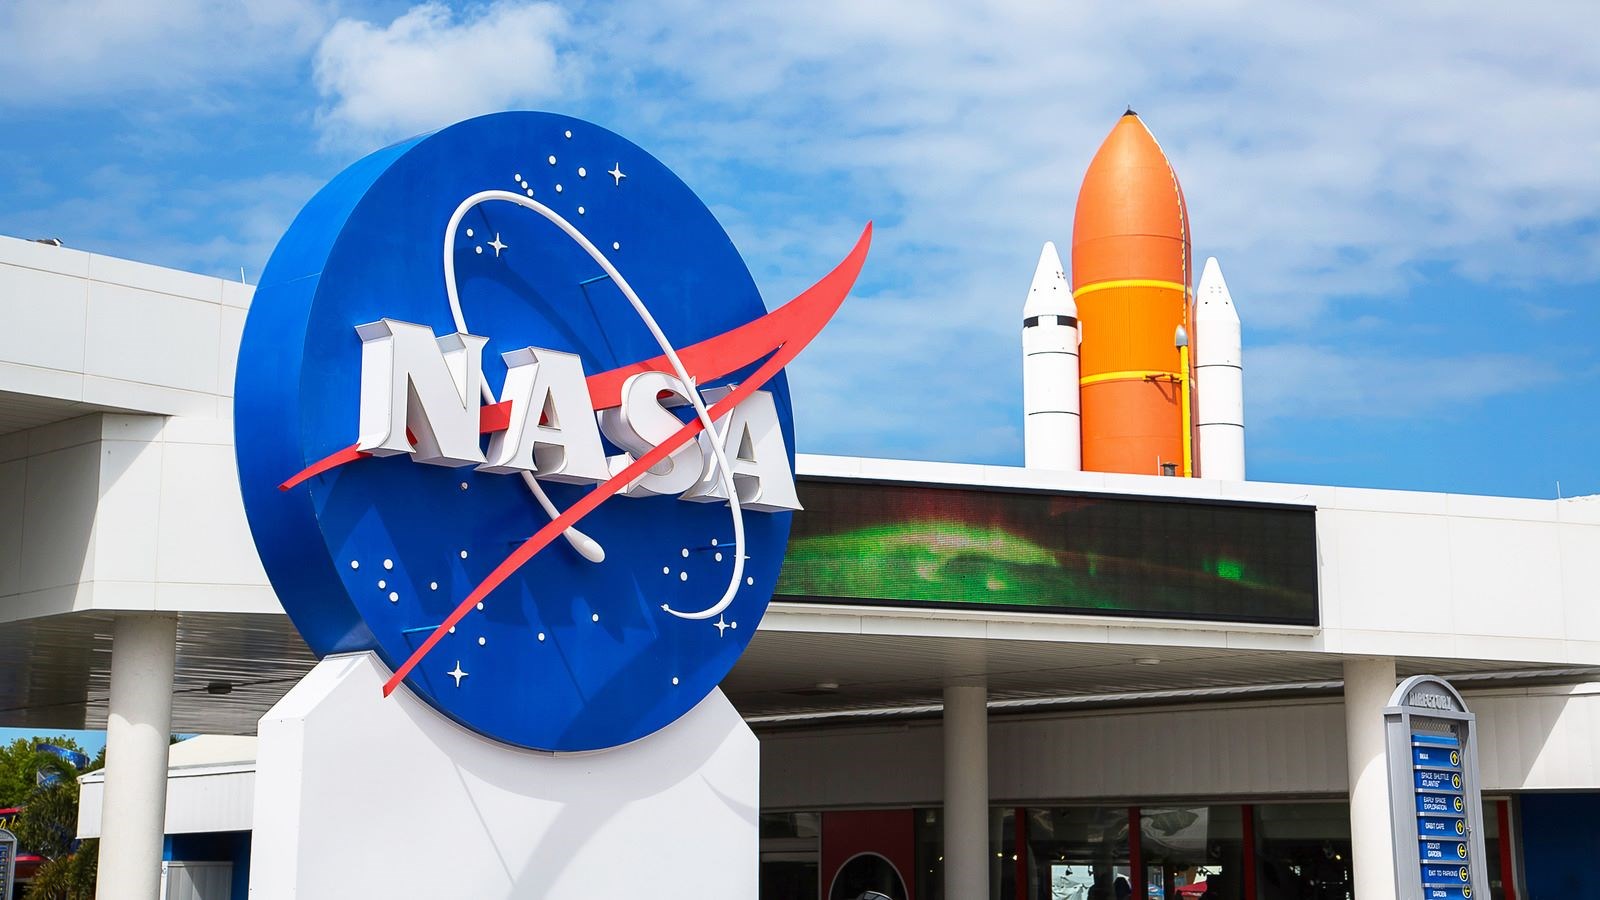 NASA AIM misyonu batarya kaynaklı sorunlardan dolayı sona erdi